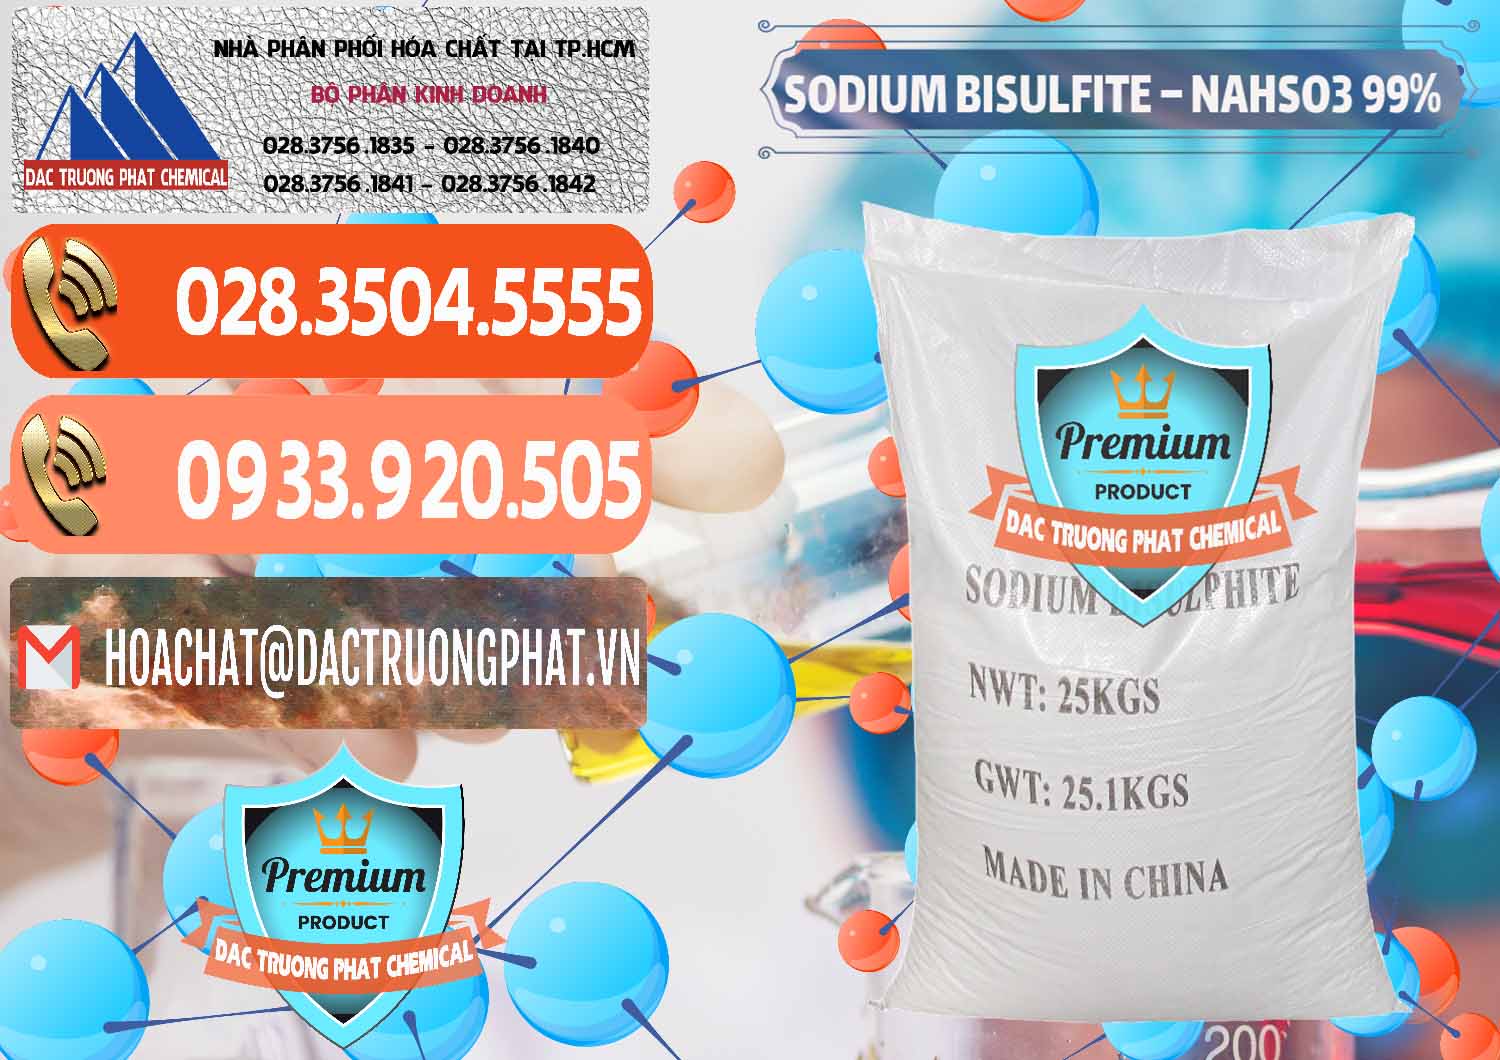 Cty chuyên cung cấp - bán Sodium Bisulfite – NAHSO3 Trung Quốc China - 0140 - Nhà cung cấp - phân phối hóa chất tại TP.HCM - hoachatmientay.com